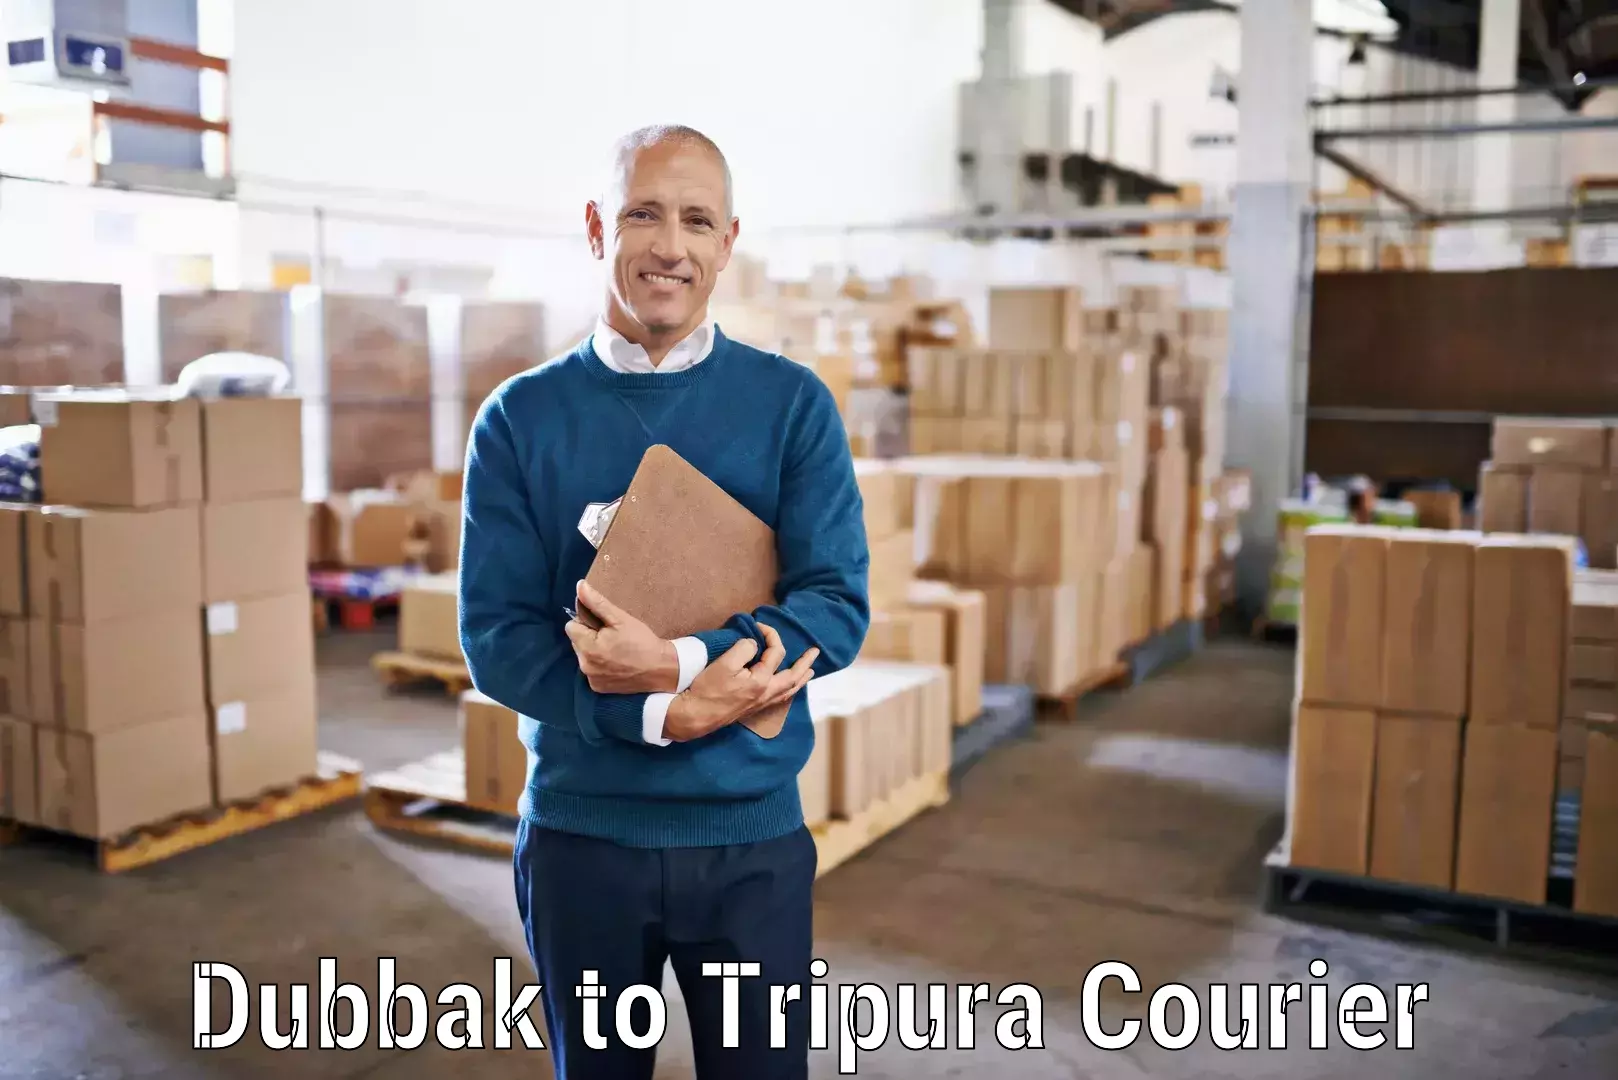 Courier rate comparison Dubbak to Udaipur Tripura